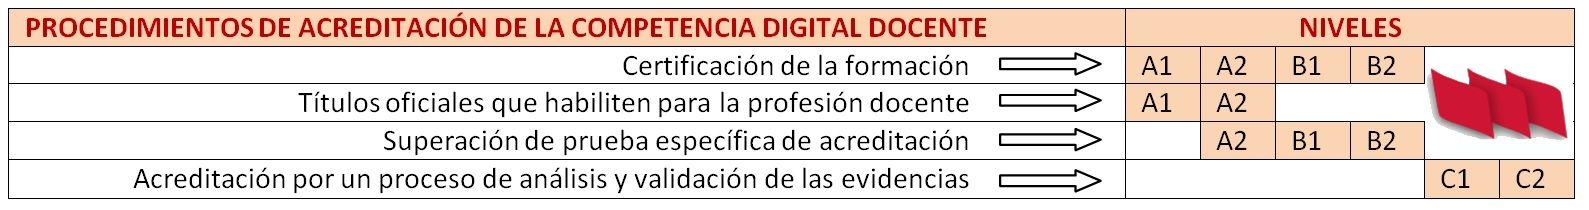 Procedimientos-Acreditacion-Competencia-Digital